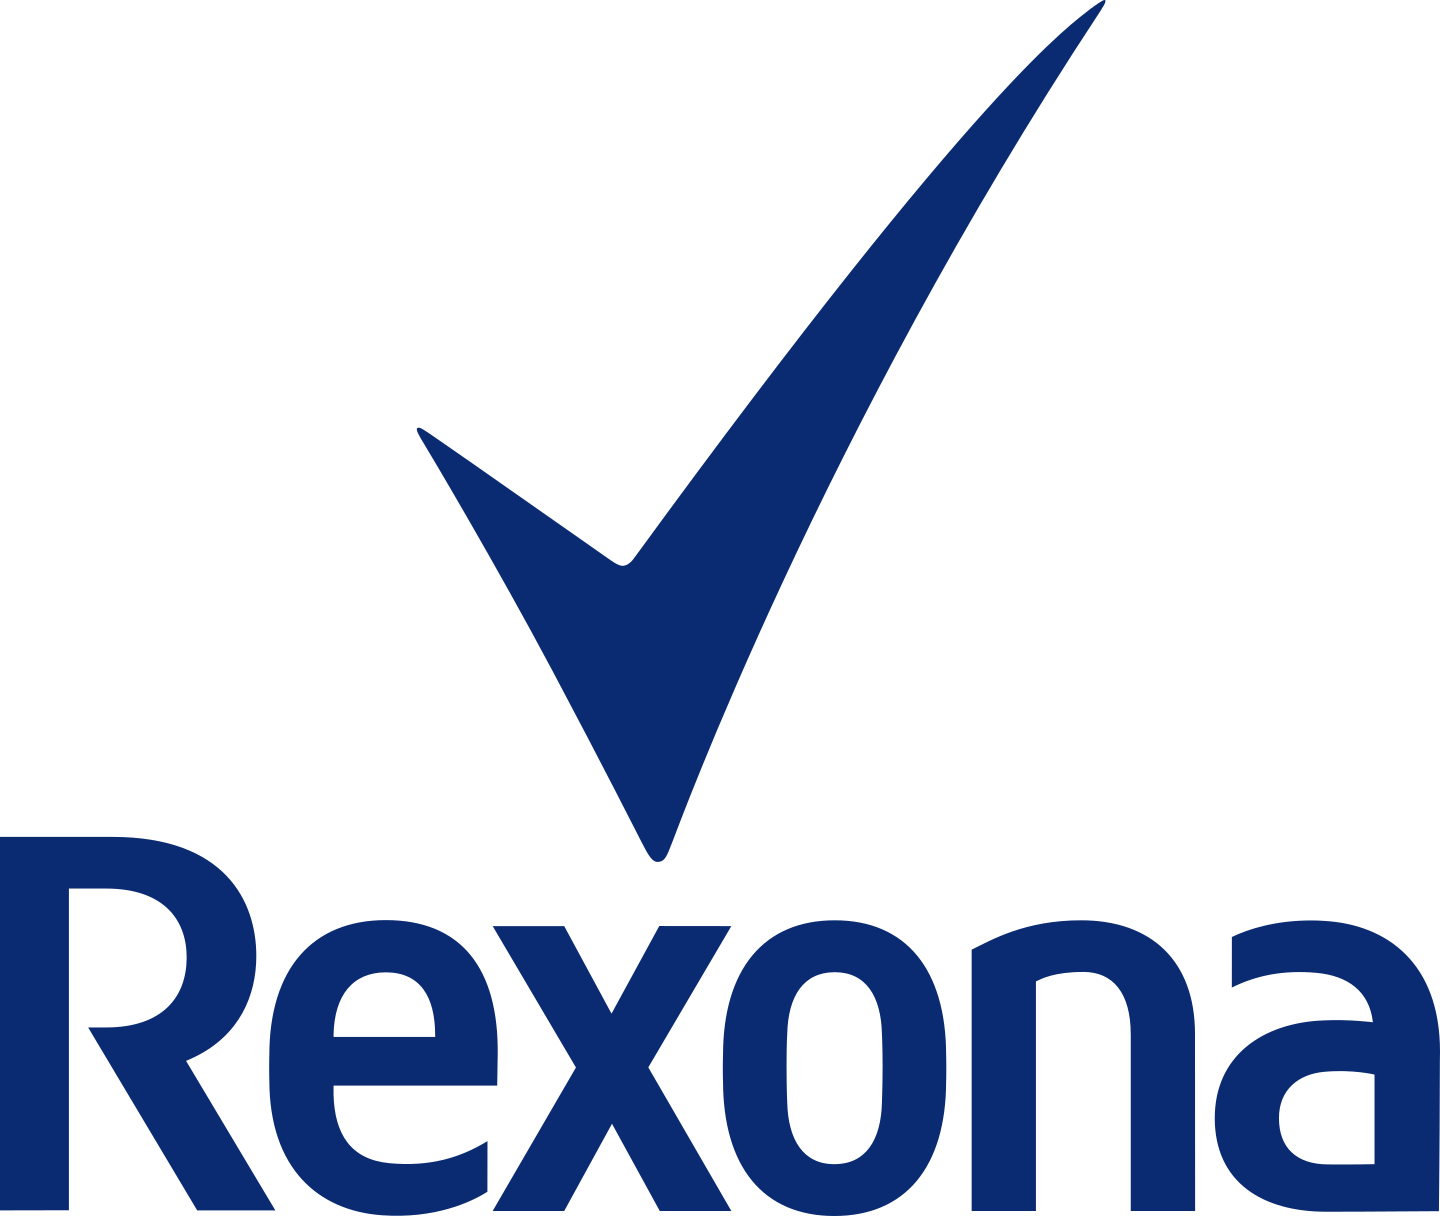 rexona logo 2 - Rexona Logo